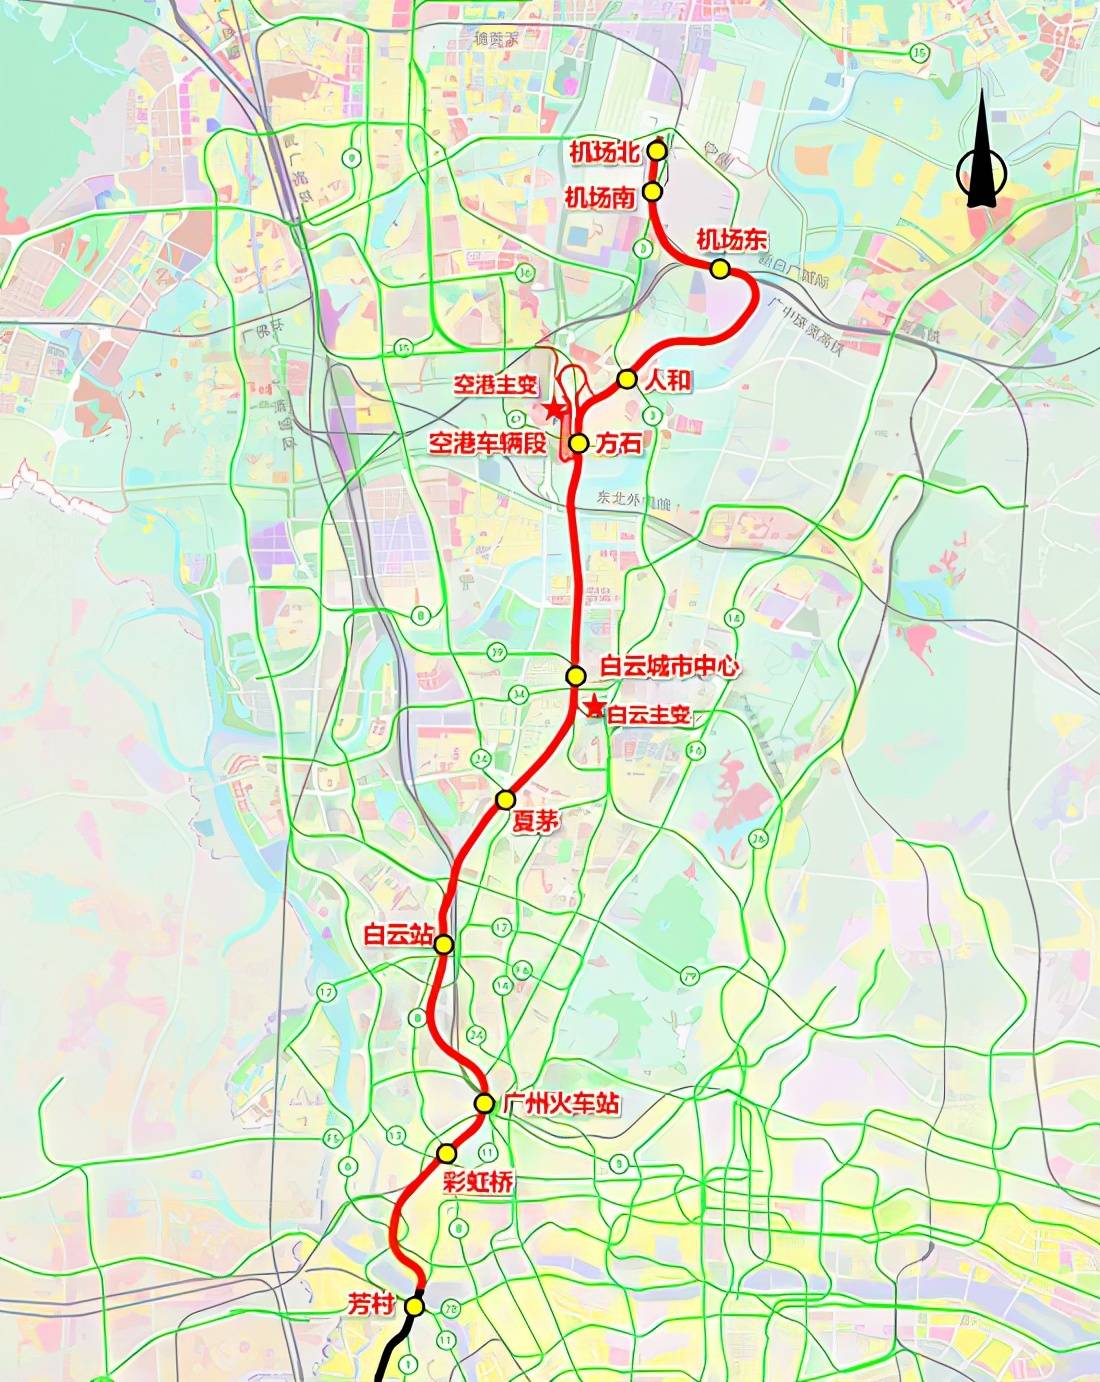 广州地铁18号线北延段,22号线北延段完成环境影响评价